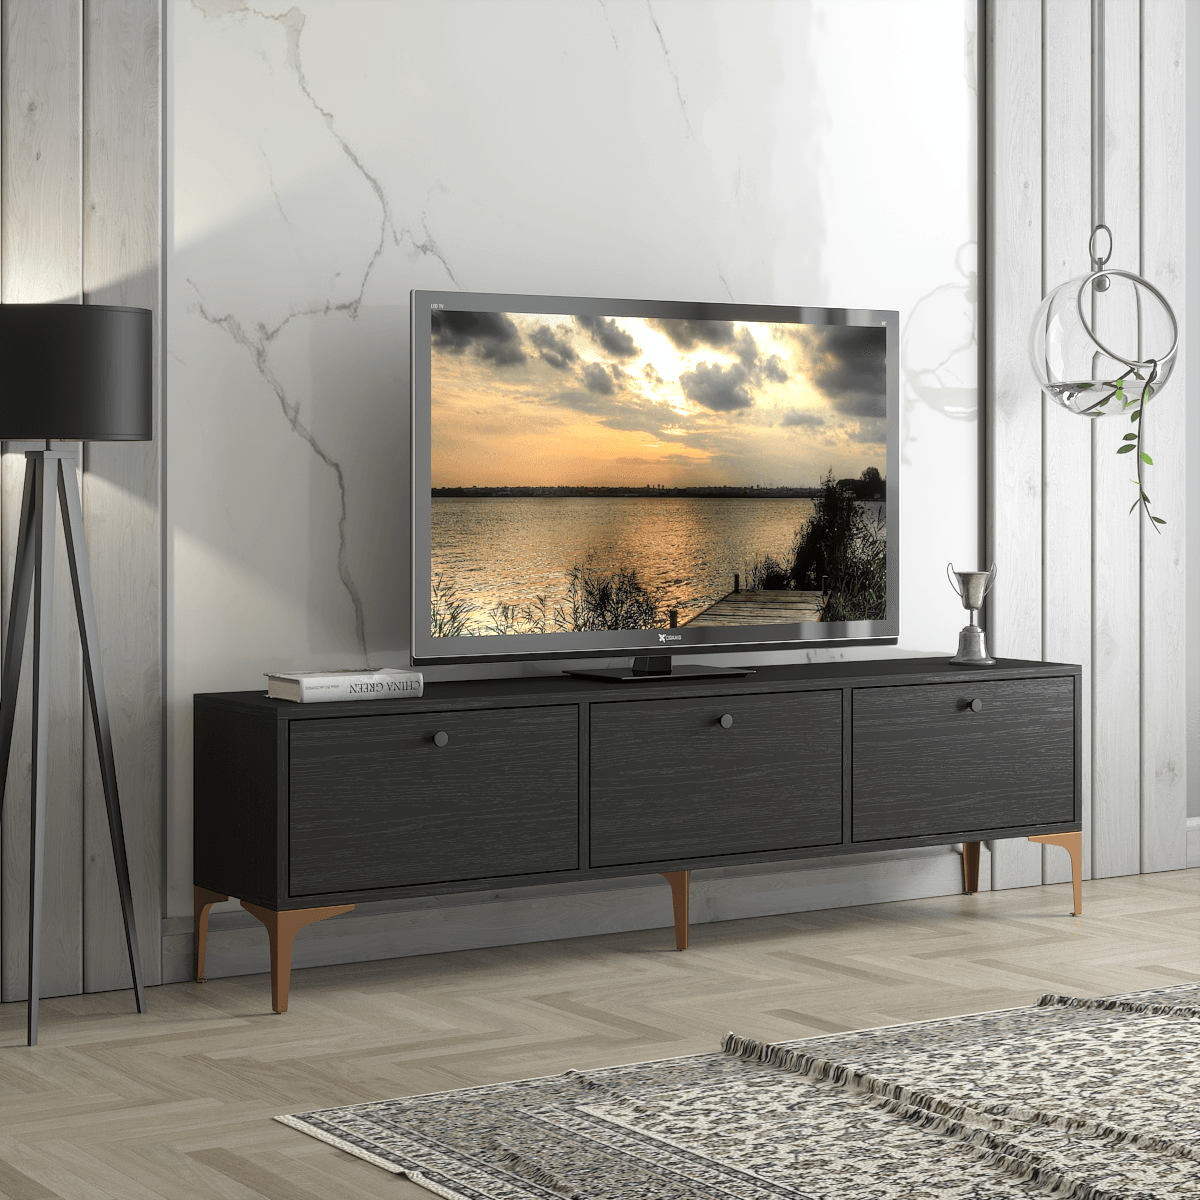 Wood'n Love Etna Premium Bakır Metal Ayaklı 160 Cm Tv Ünitesi - Wood Siyah / Bakır